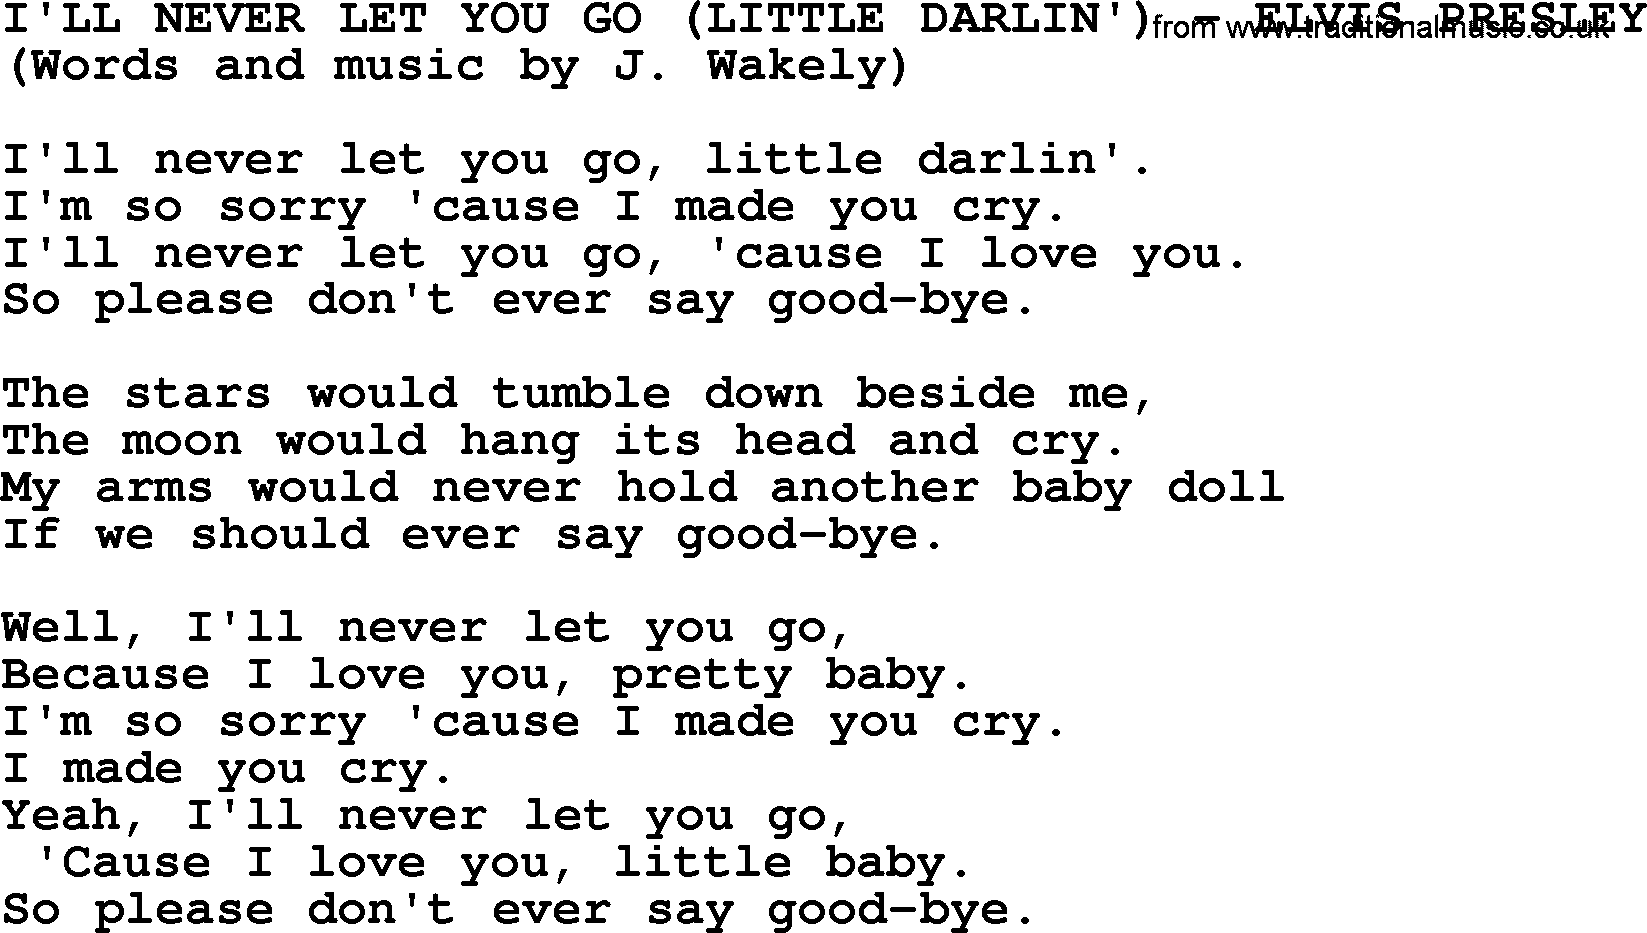 Elvis Presley song: I'll Never Let You Go (Little Darlin') lyrics